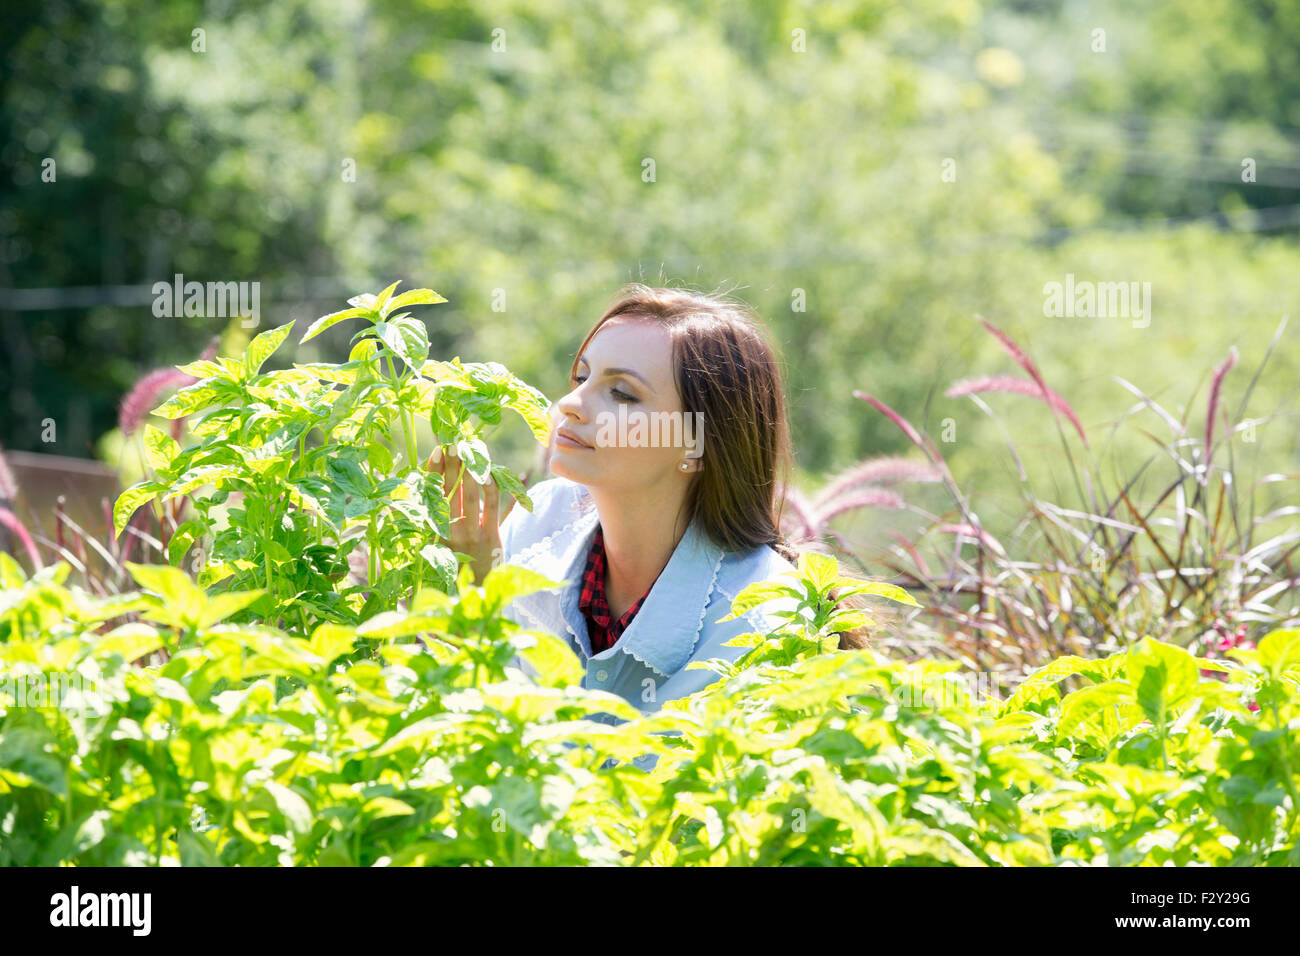 Eine junge Frau im freien umgeben von Pflanzen. Stockfoto